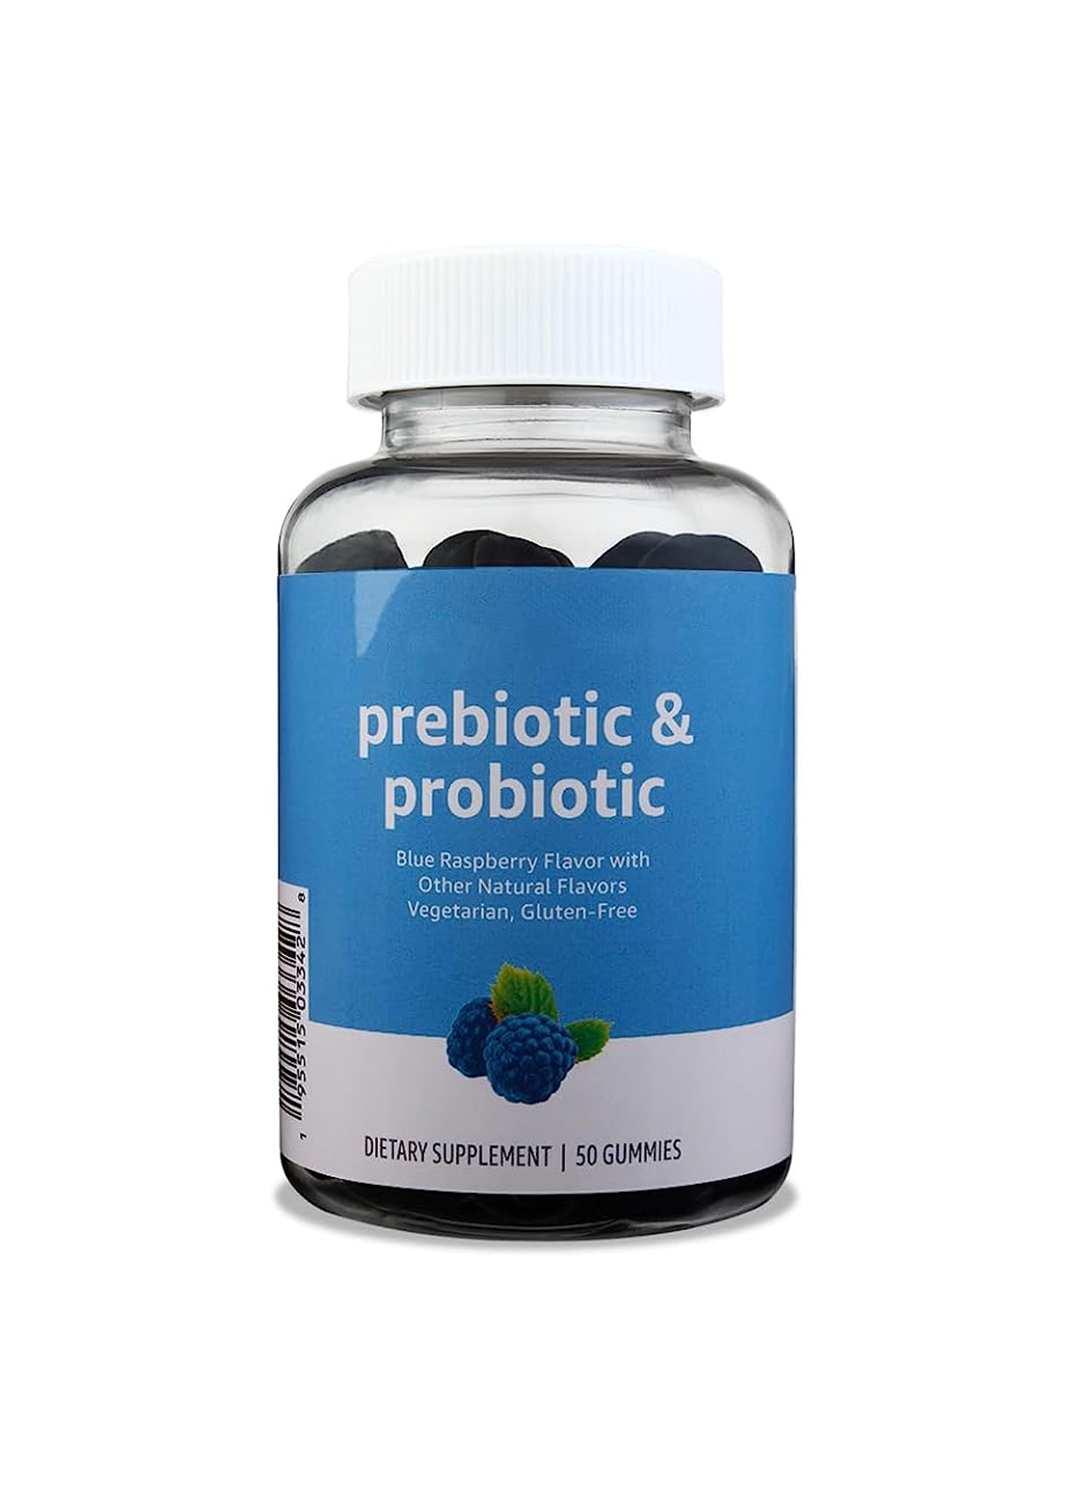 OEM Private Label Prebiotici & Probiotici Caramelle Gommose Vegane Biologiche Vitaminiche gommose Supporto immunitario